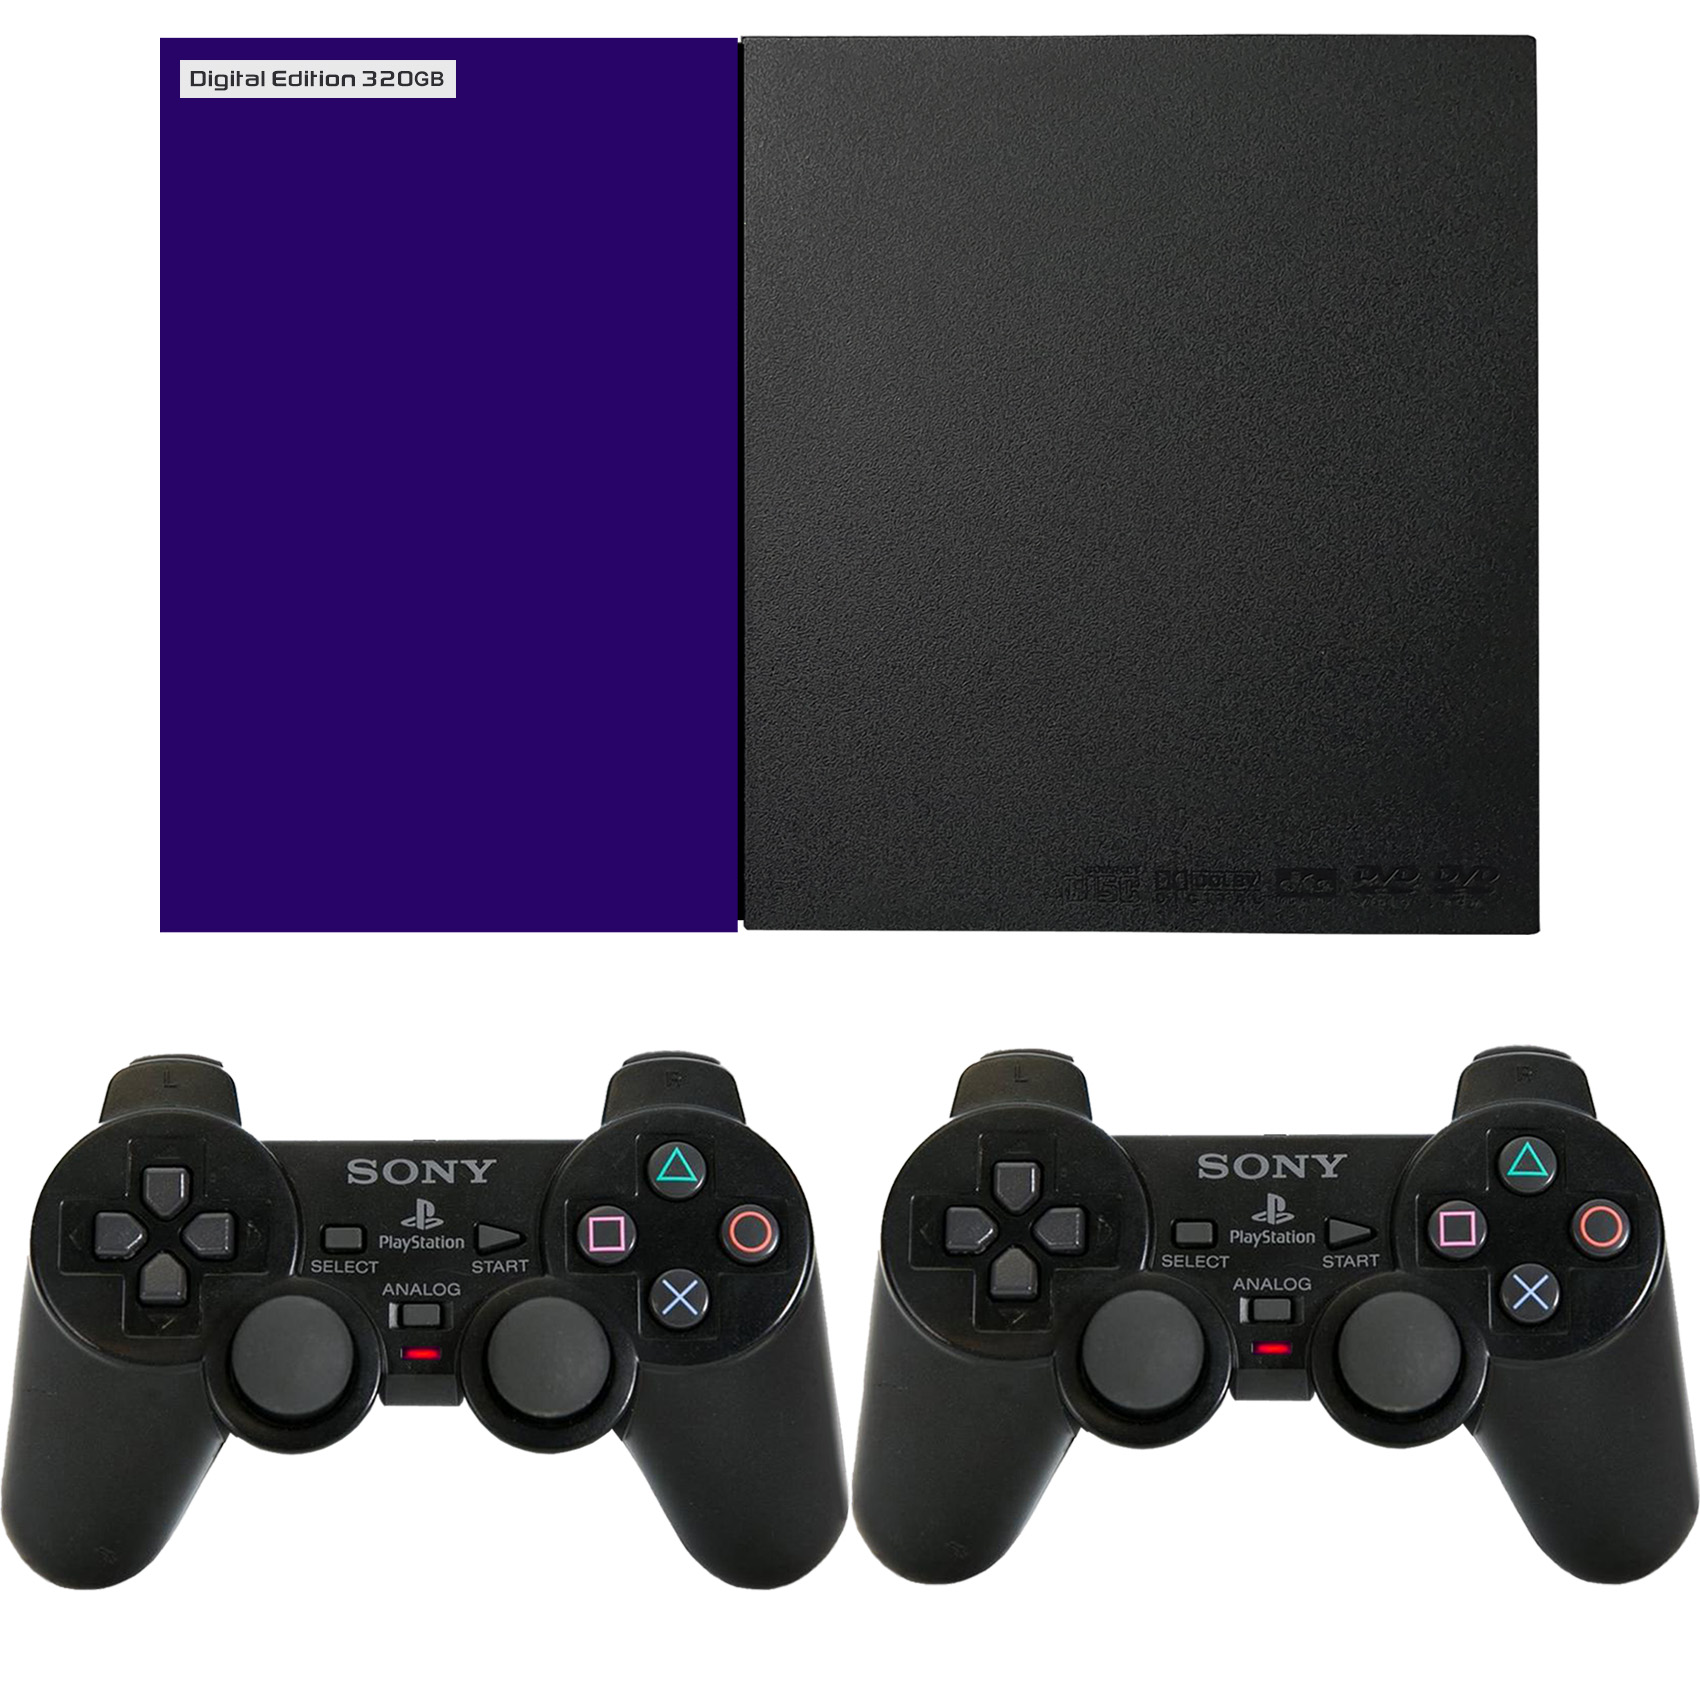 مجموعه کنسول بازی مدل Playstation 2 Digital Edition ظرفیت 320 گیگابایت